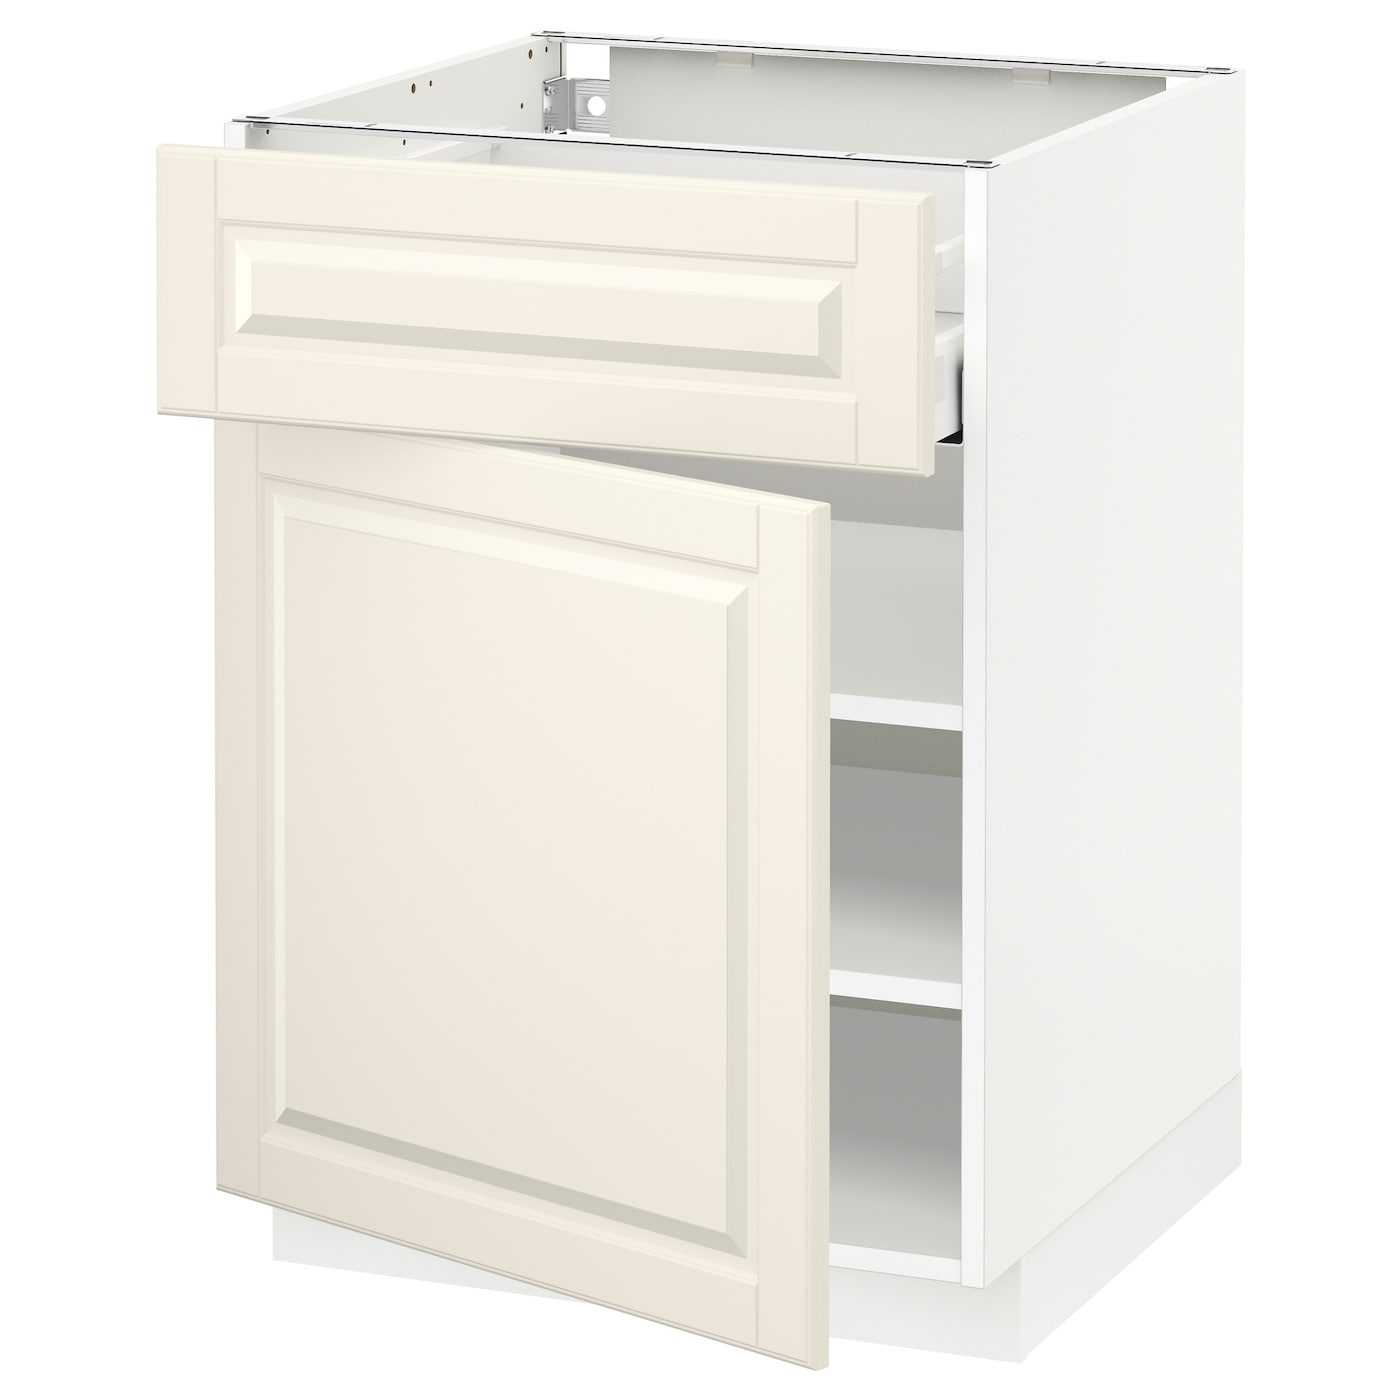 Напольный кухонный шкаф  - IKEA METOD MAXIMERA, 88x62x60см, белый/светло-бежевый, МЕТОД МАКСИМЕРА ИКЕА